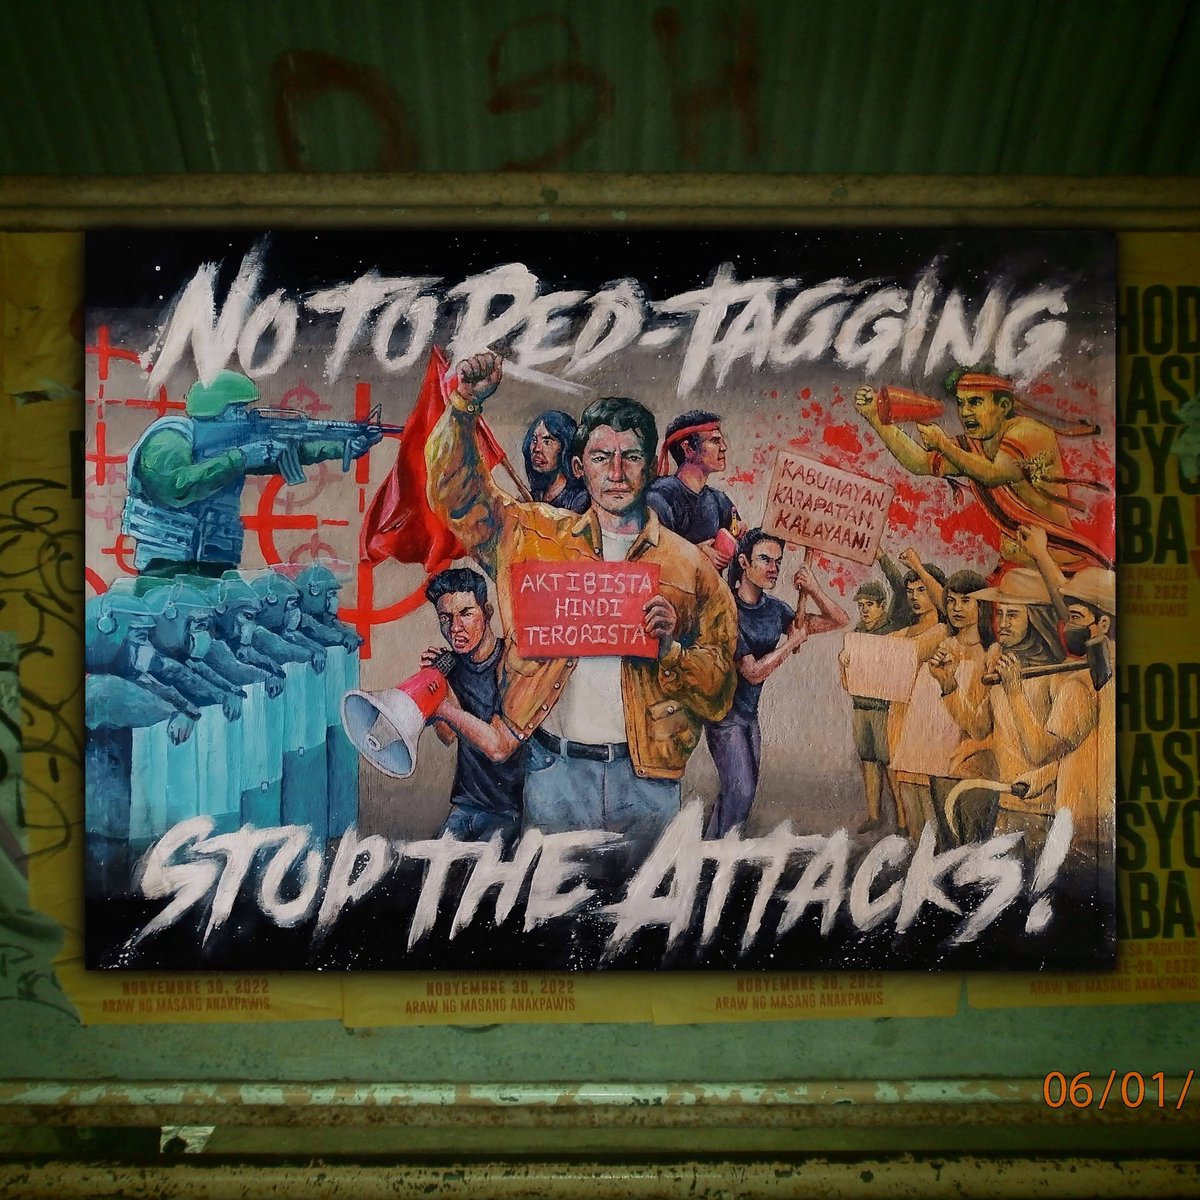 𝒌𝒂𝒓𝒂𝒕𝒖𝒍𝒂 𝒌𝒐𝒏𝒕𝒓𝒂 𝒑𝒂𝒔𝒊𝒔𝒕𝒂 ✊
acrylic on cardboard
18x24 inches
2023

#AbolishNTFELCAC
#NoToRedTagging